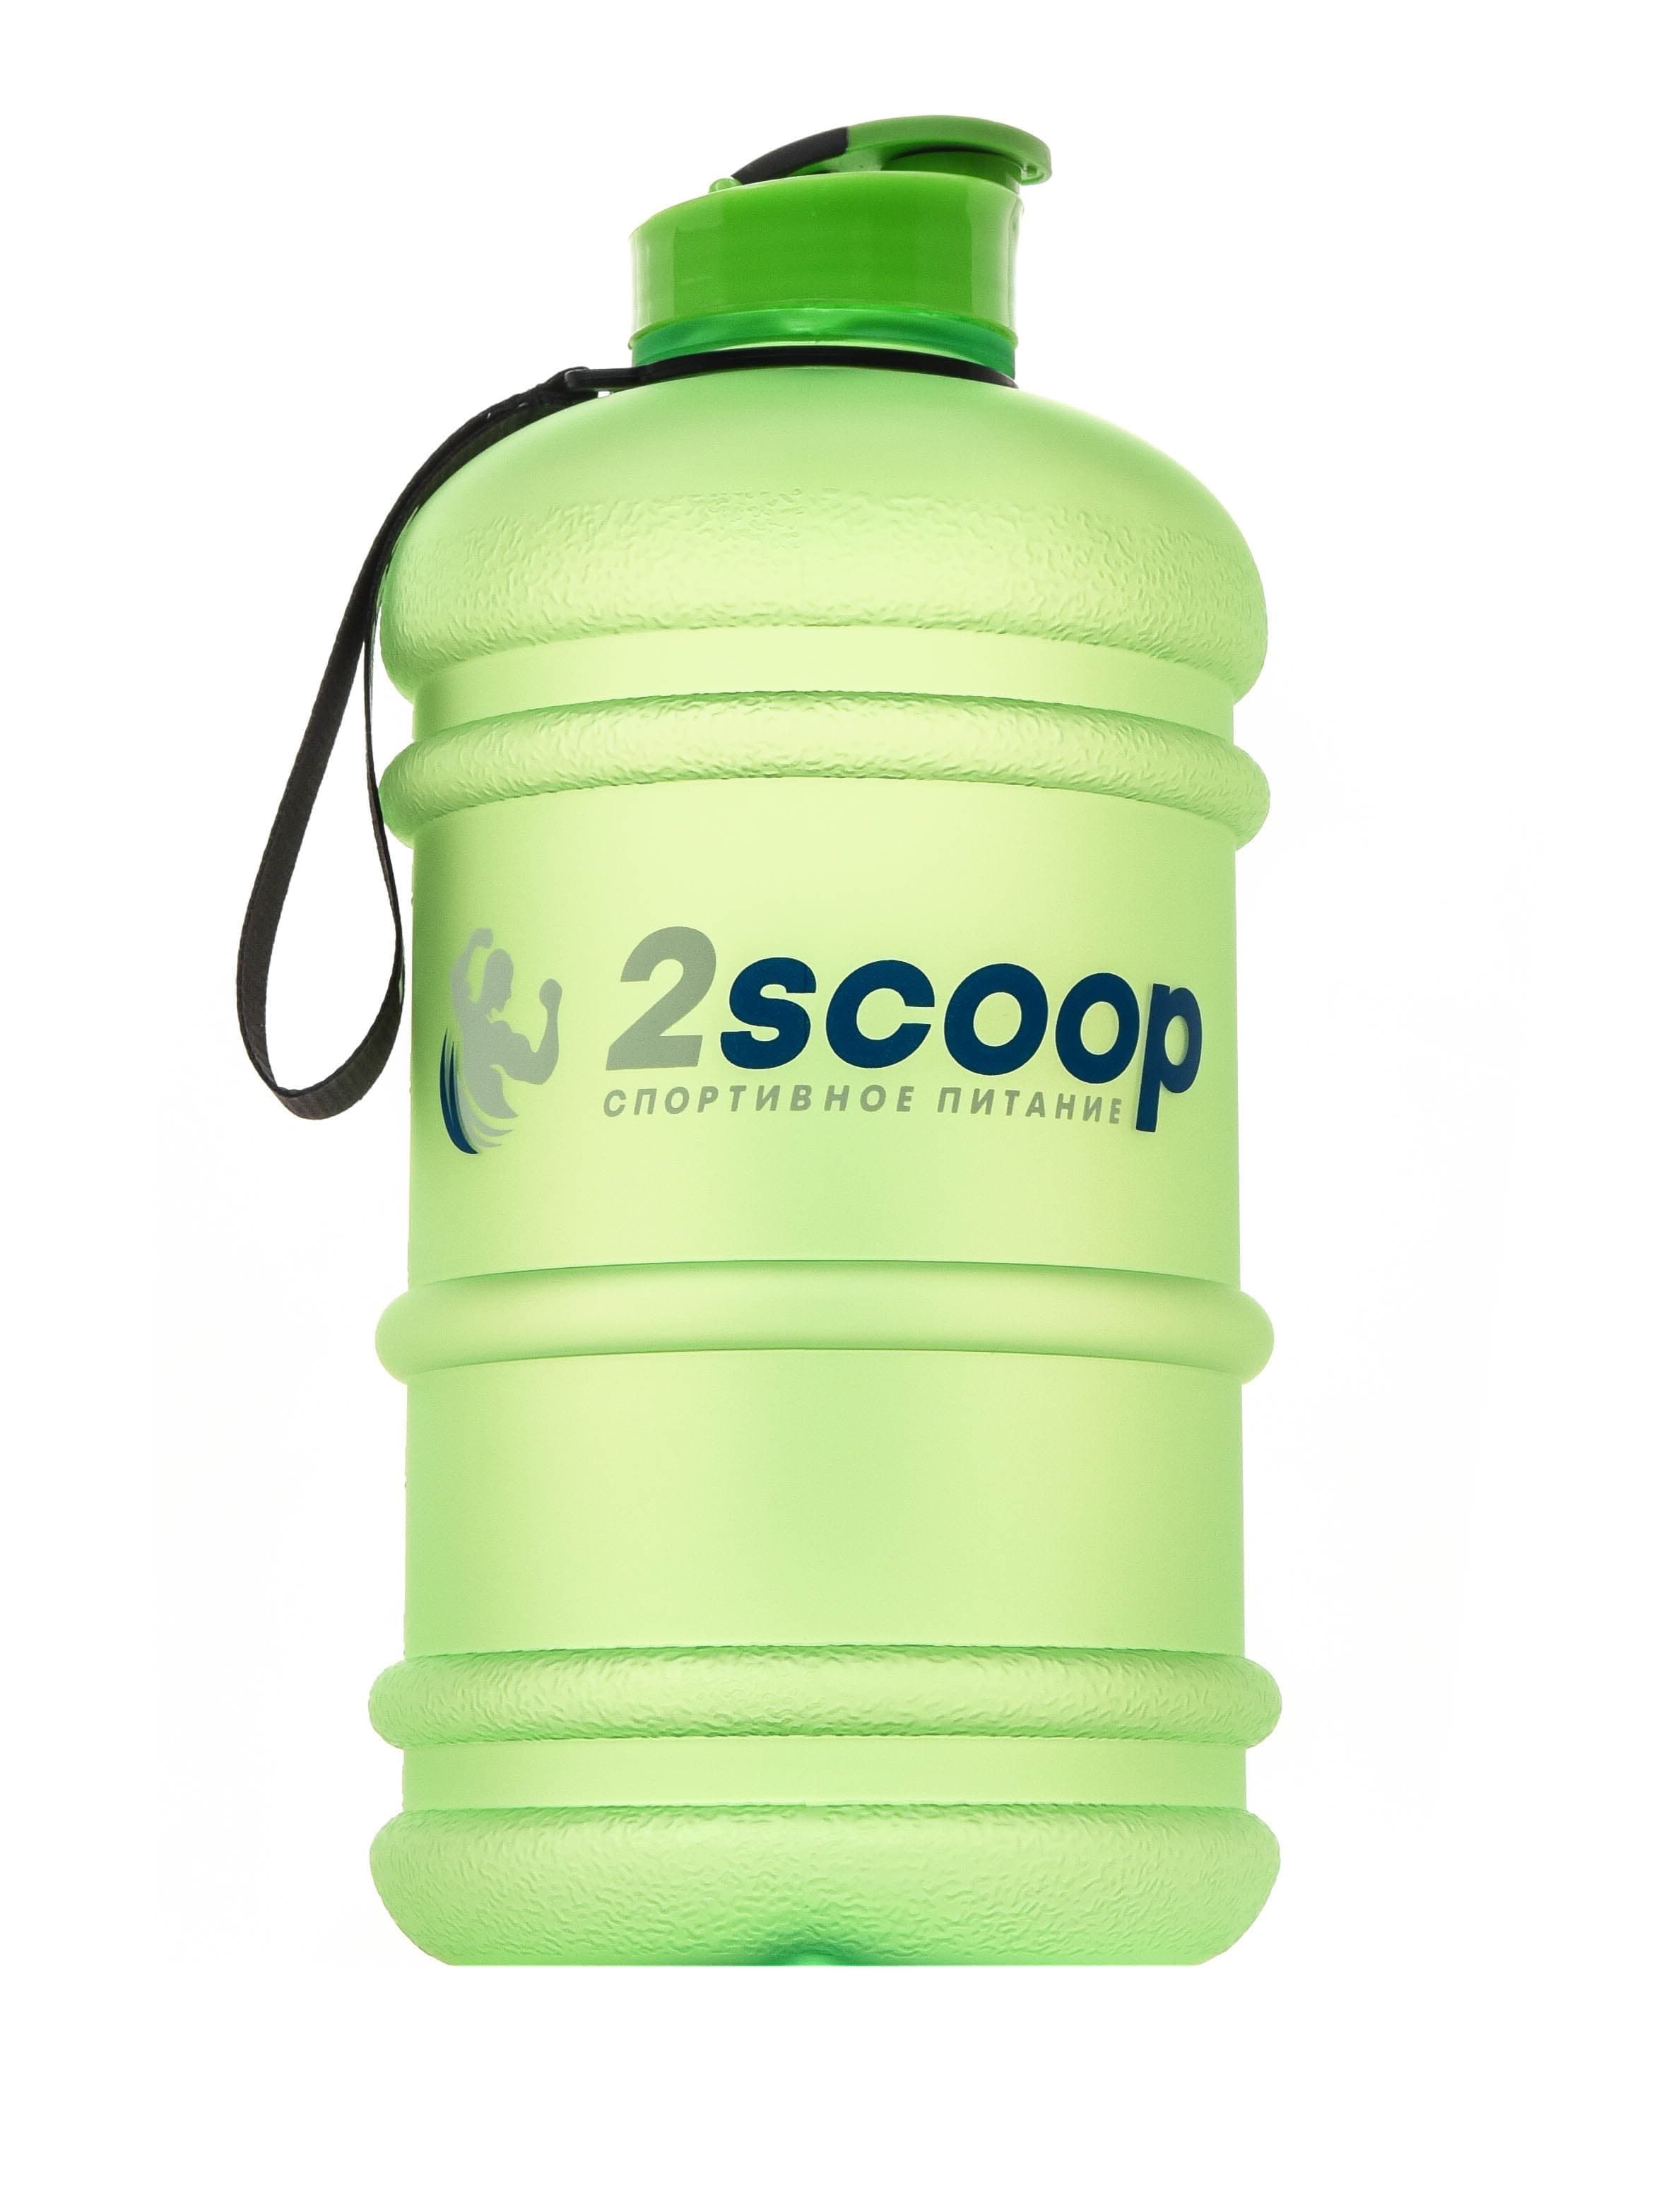 2scoop Бутыль 2.2 L прорезиненный крышка щелчок (Зелёный) фото